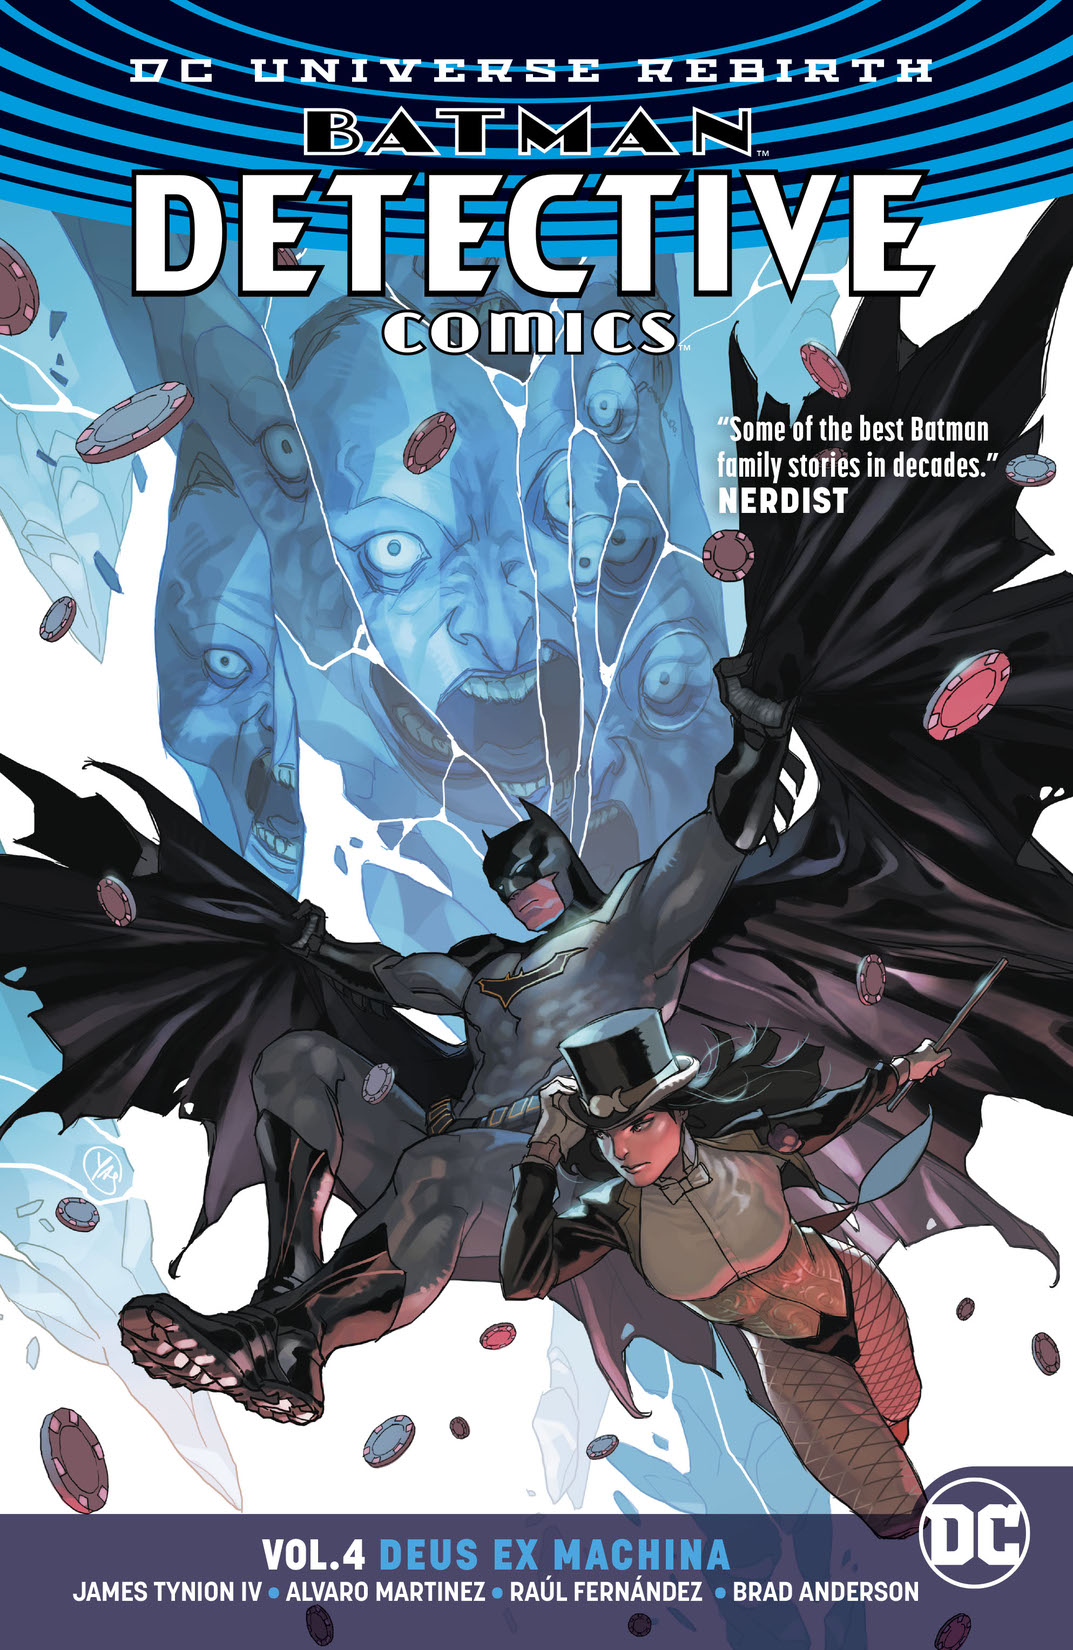 Batman - Detective Comics Vol. 6: Icarus preview images